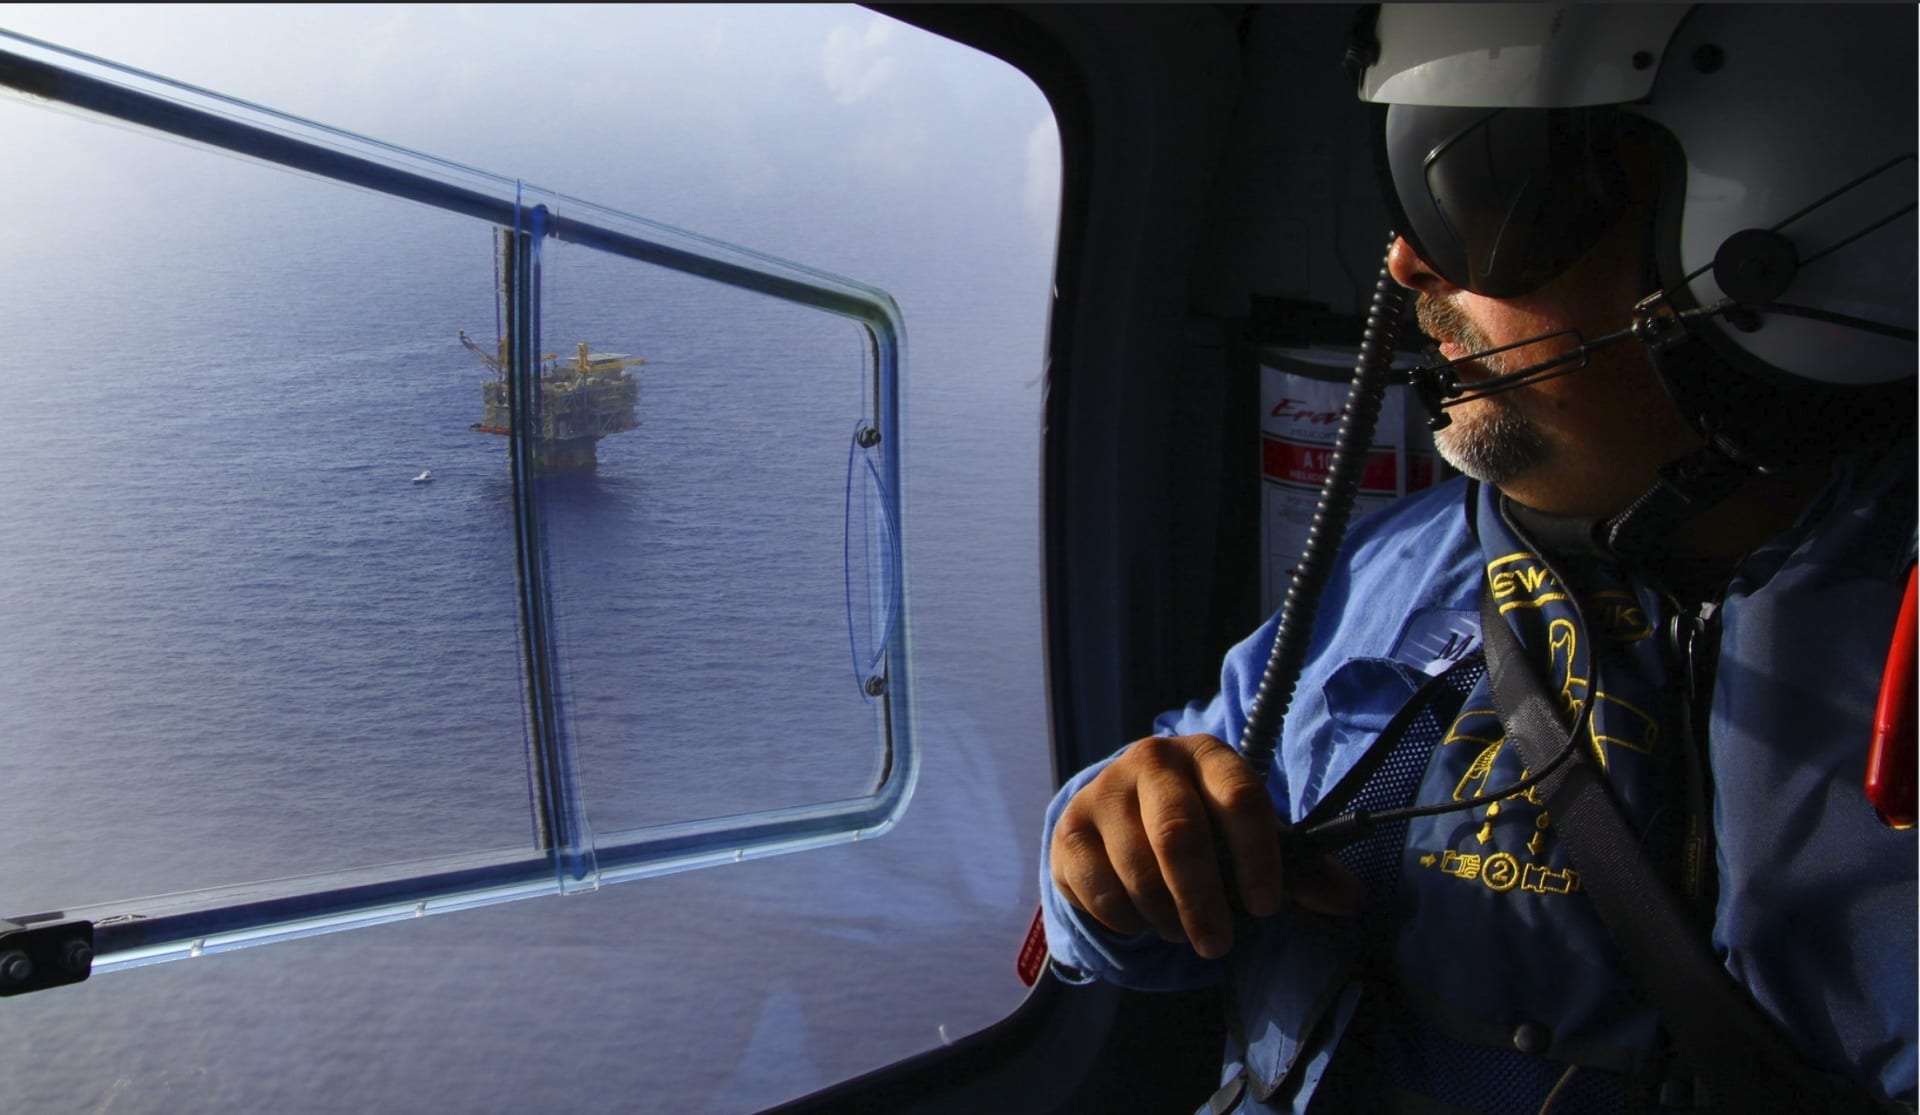 Podle ropných společností je zajištěna bezpečnost tak, aby se katastrofa podobná Deepwater Horizon už neopakovala